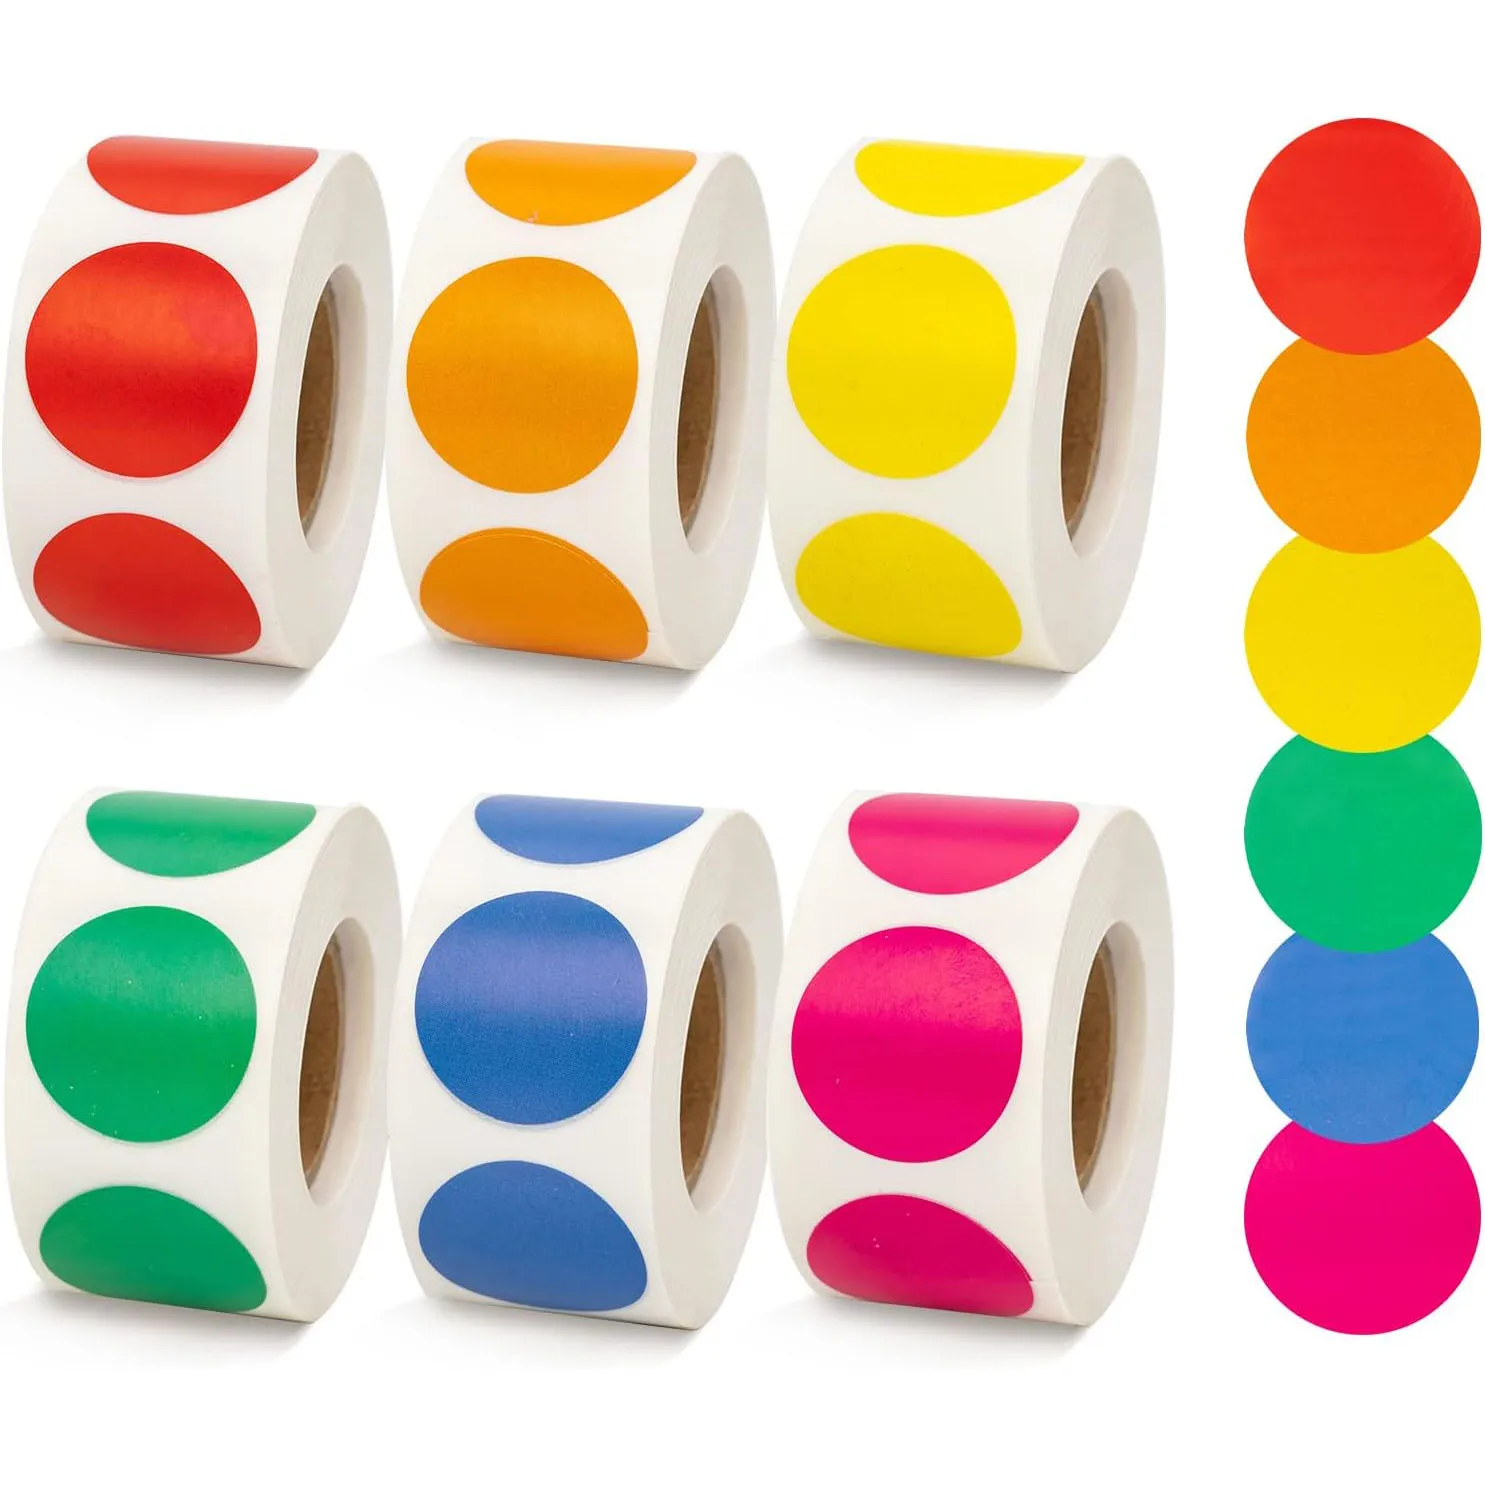  круглые наклейки с цветовым кодированием Круглые цветные точечные наклейки, по 500 штук каждый, 10 разных цветов для домашнего офиса в классе - 0